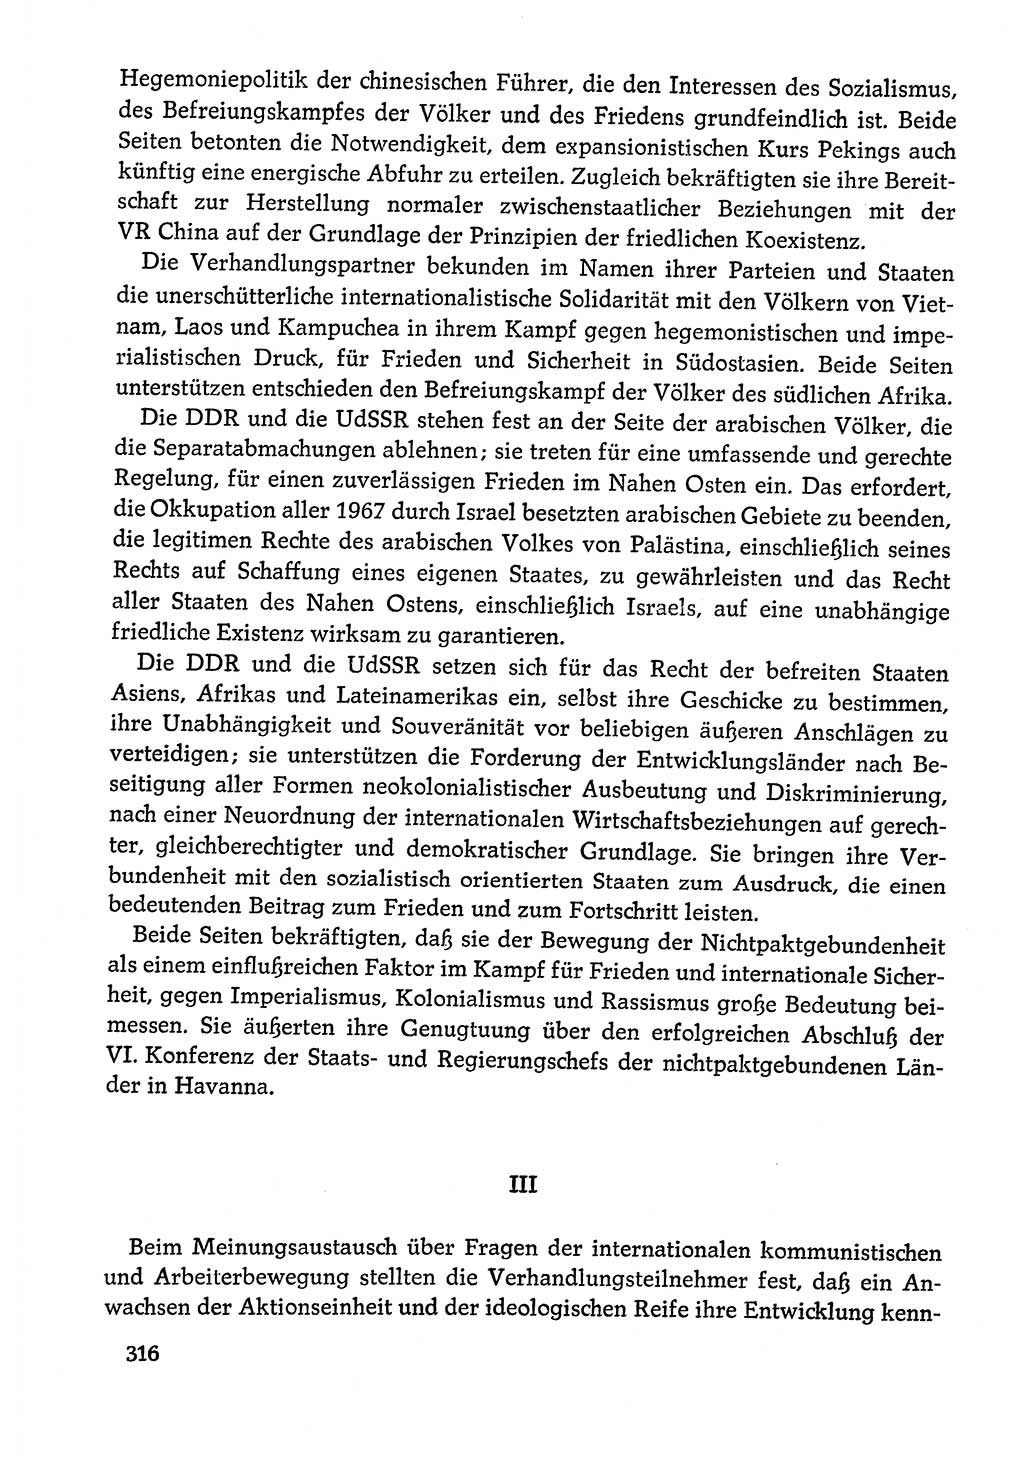 Dokumente der Sozialistischen Einheitspartei Deutschlands (SED) [Deutsche Demokratische Republik (DDR)] 1978-1979, Seite 316 (Dok. SED DDR 1978-1979, S. 316)